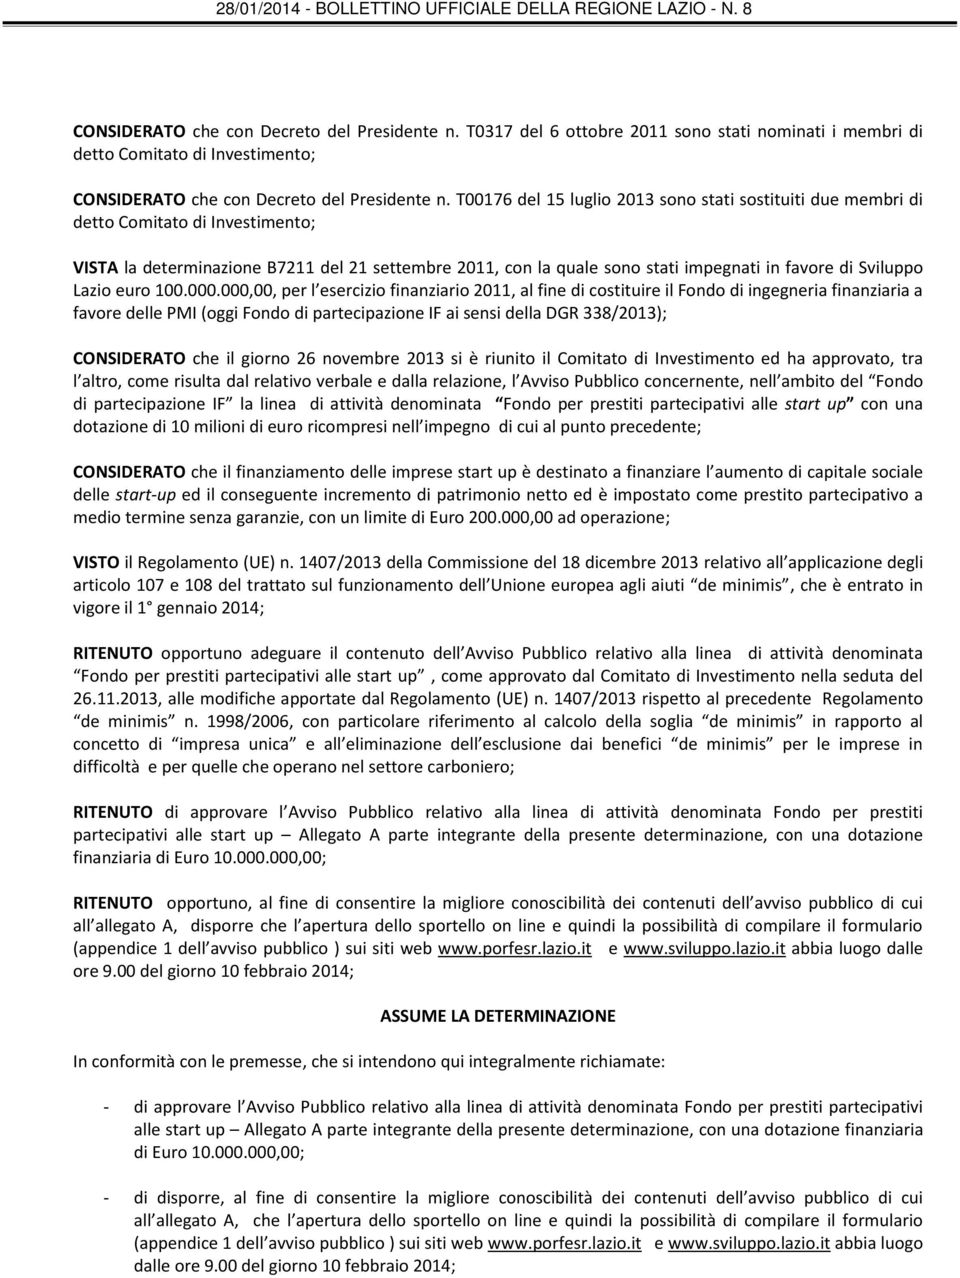 Sviluppo Lazio euro 100.000.